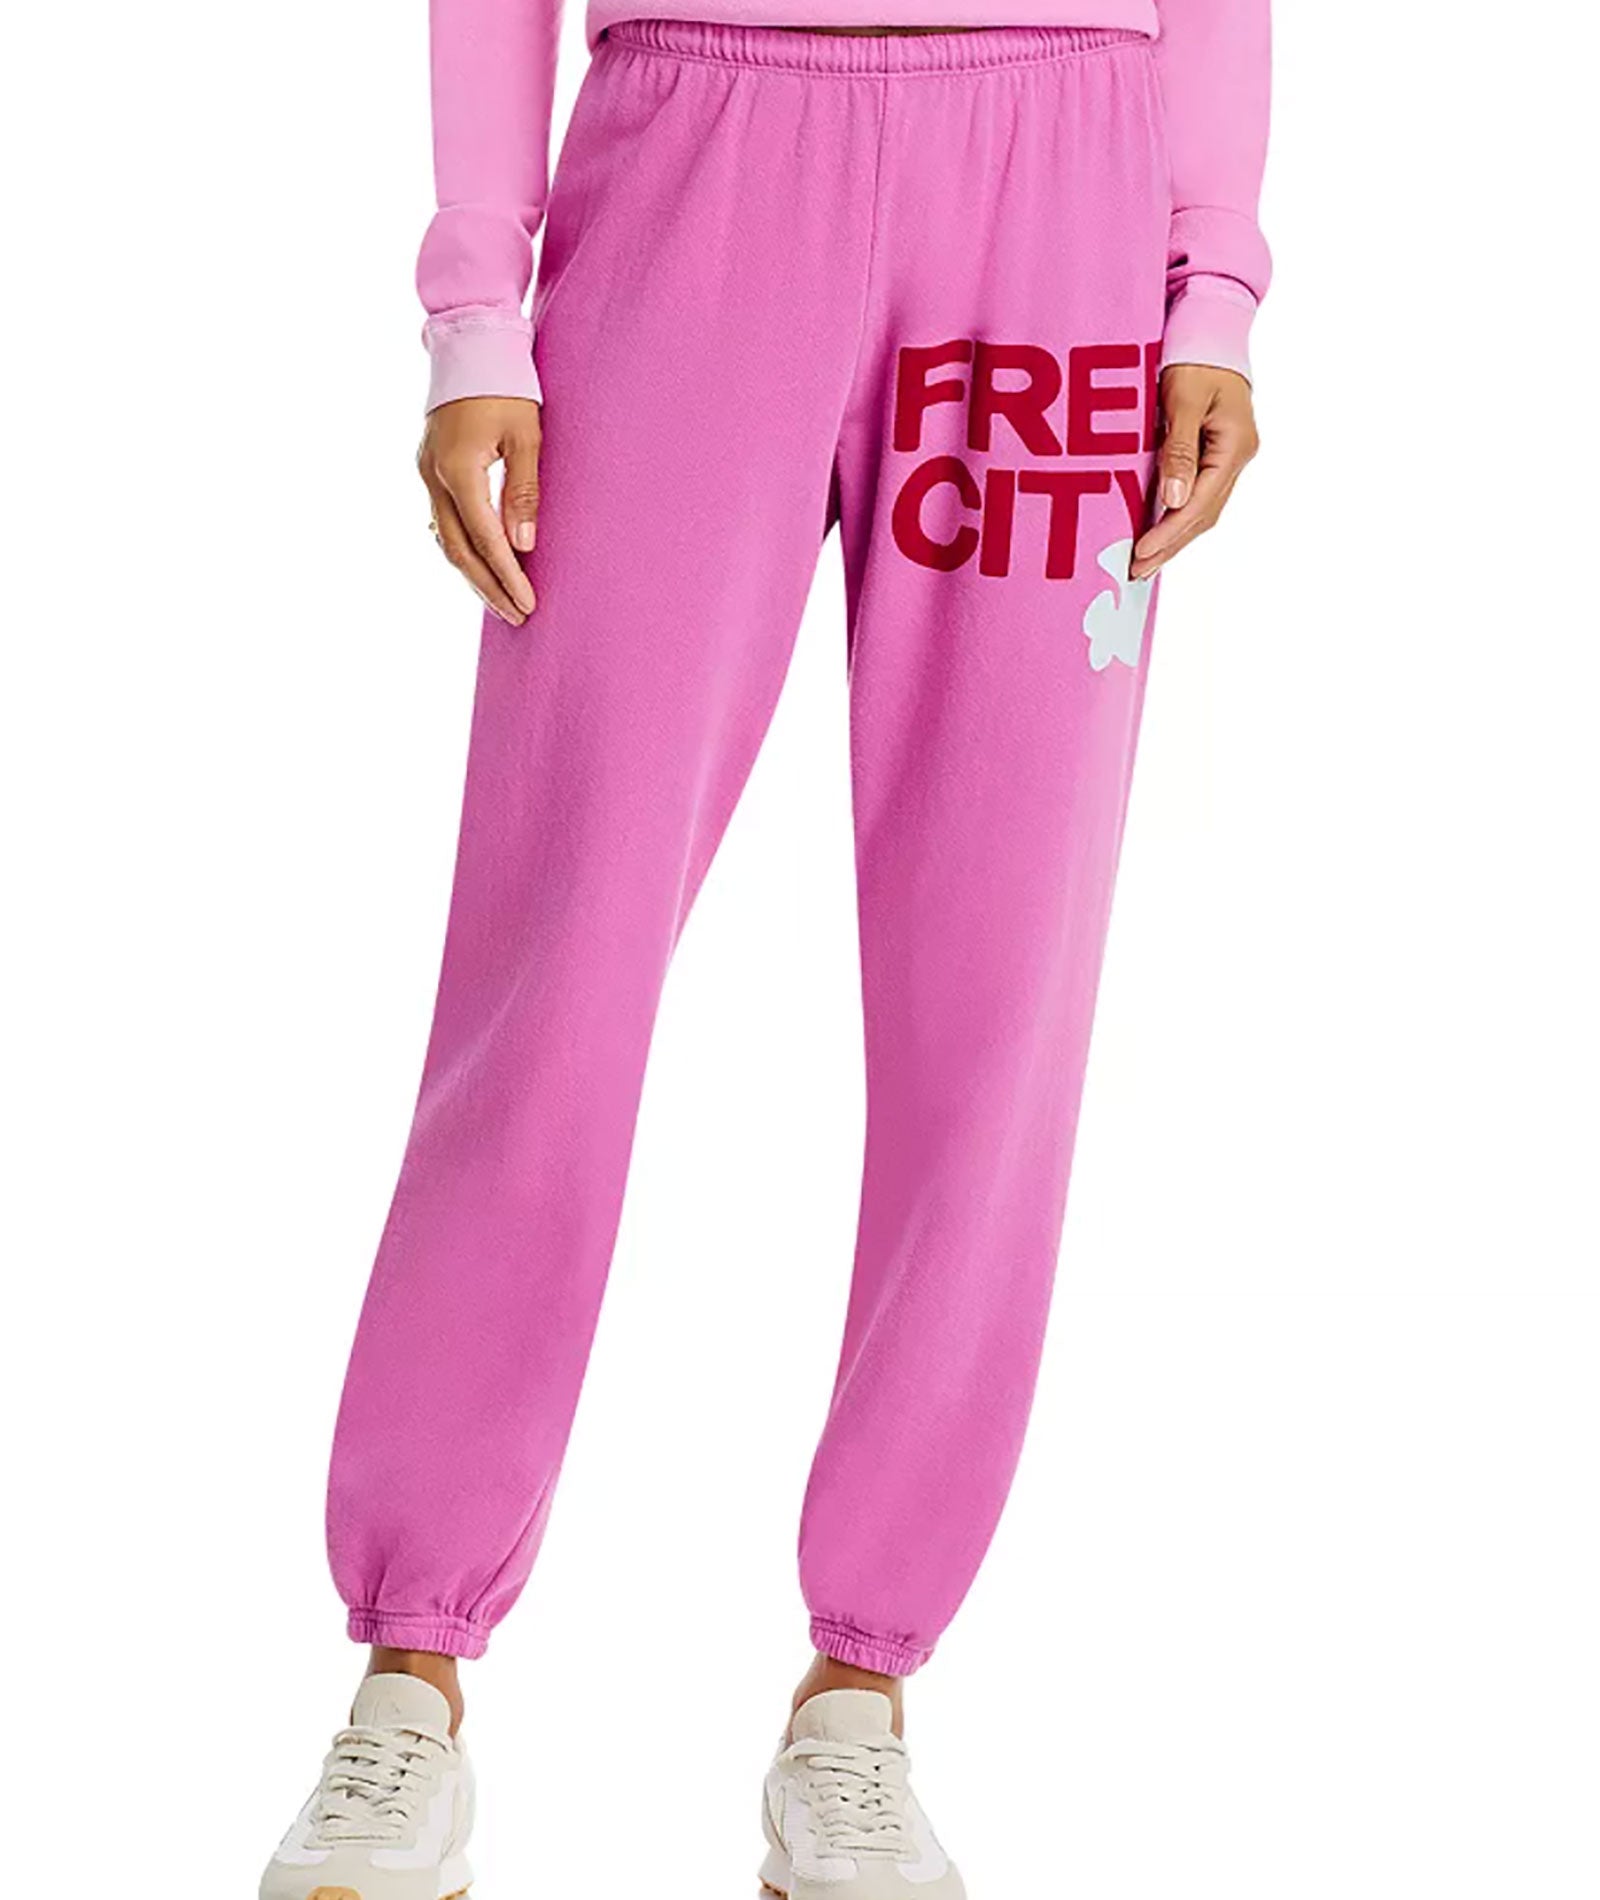 Victoria's Secret Pink Active Track Pants Workout Sweatpant Bottoms  Outerwear